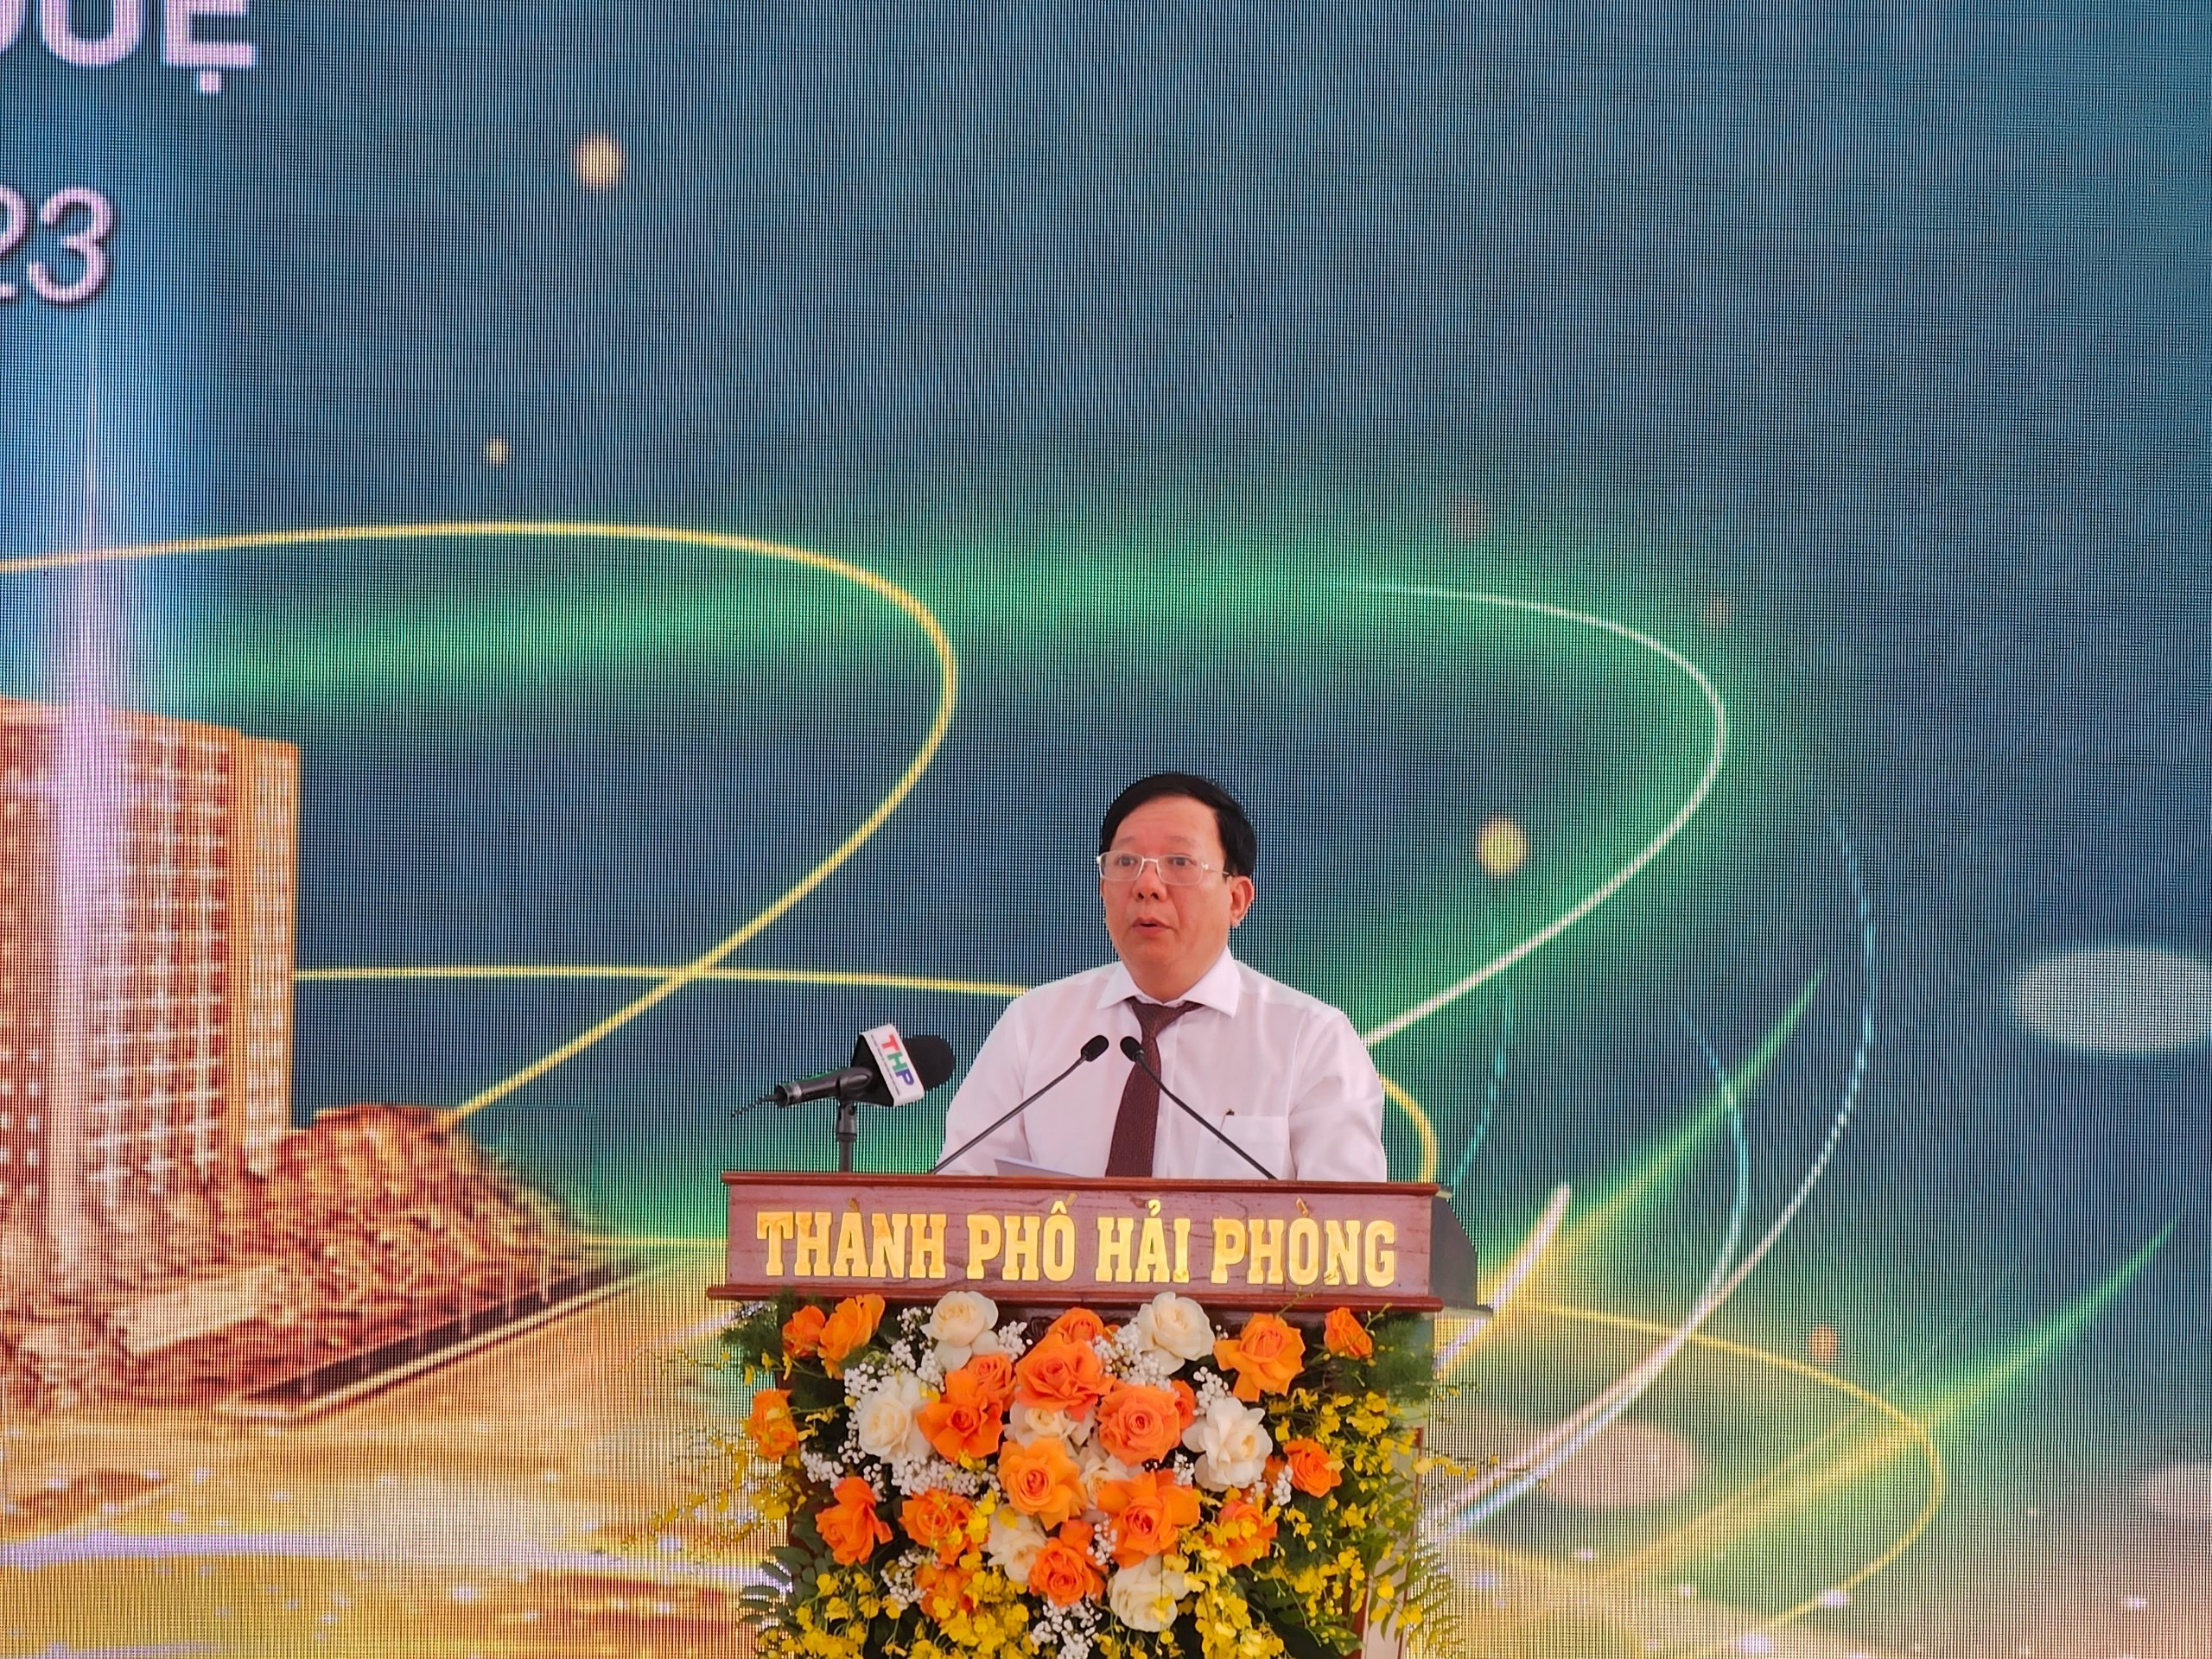 Phó Chủ tịch UBND TP Nguyễn Đức Thọ phát biểu chỉ đạo tại buổi lễ.